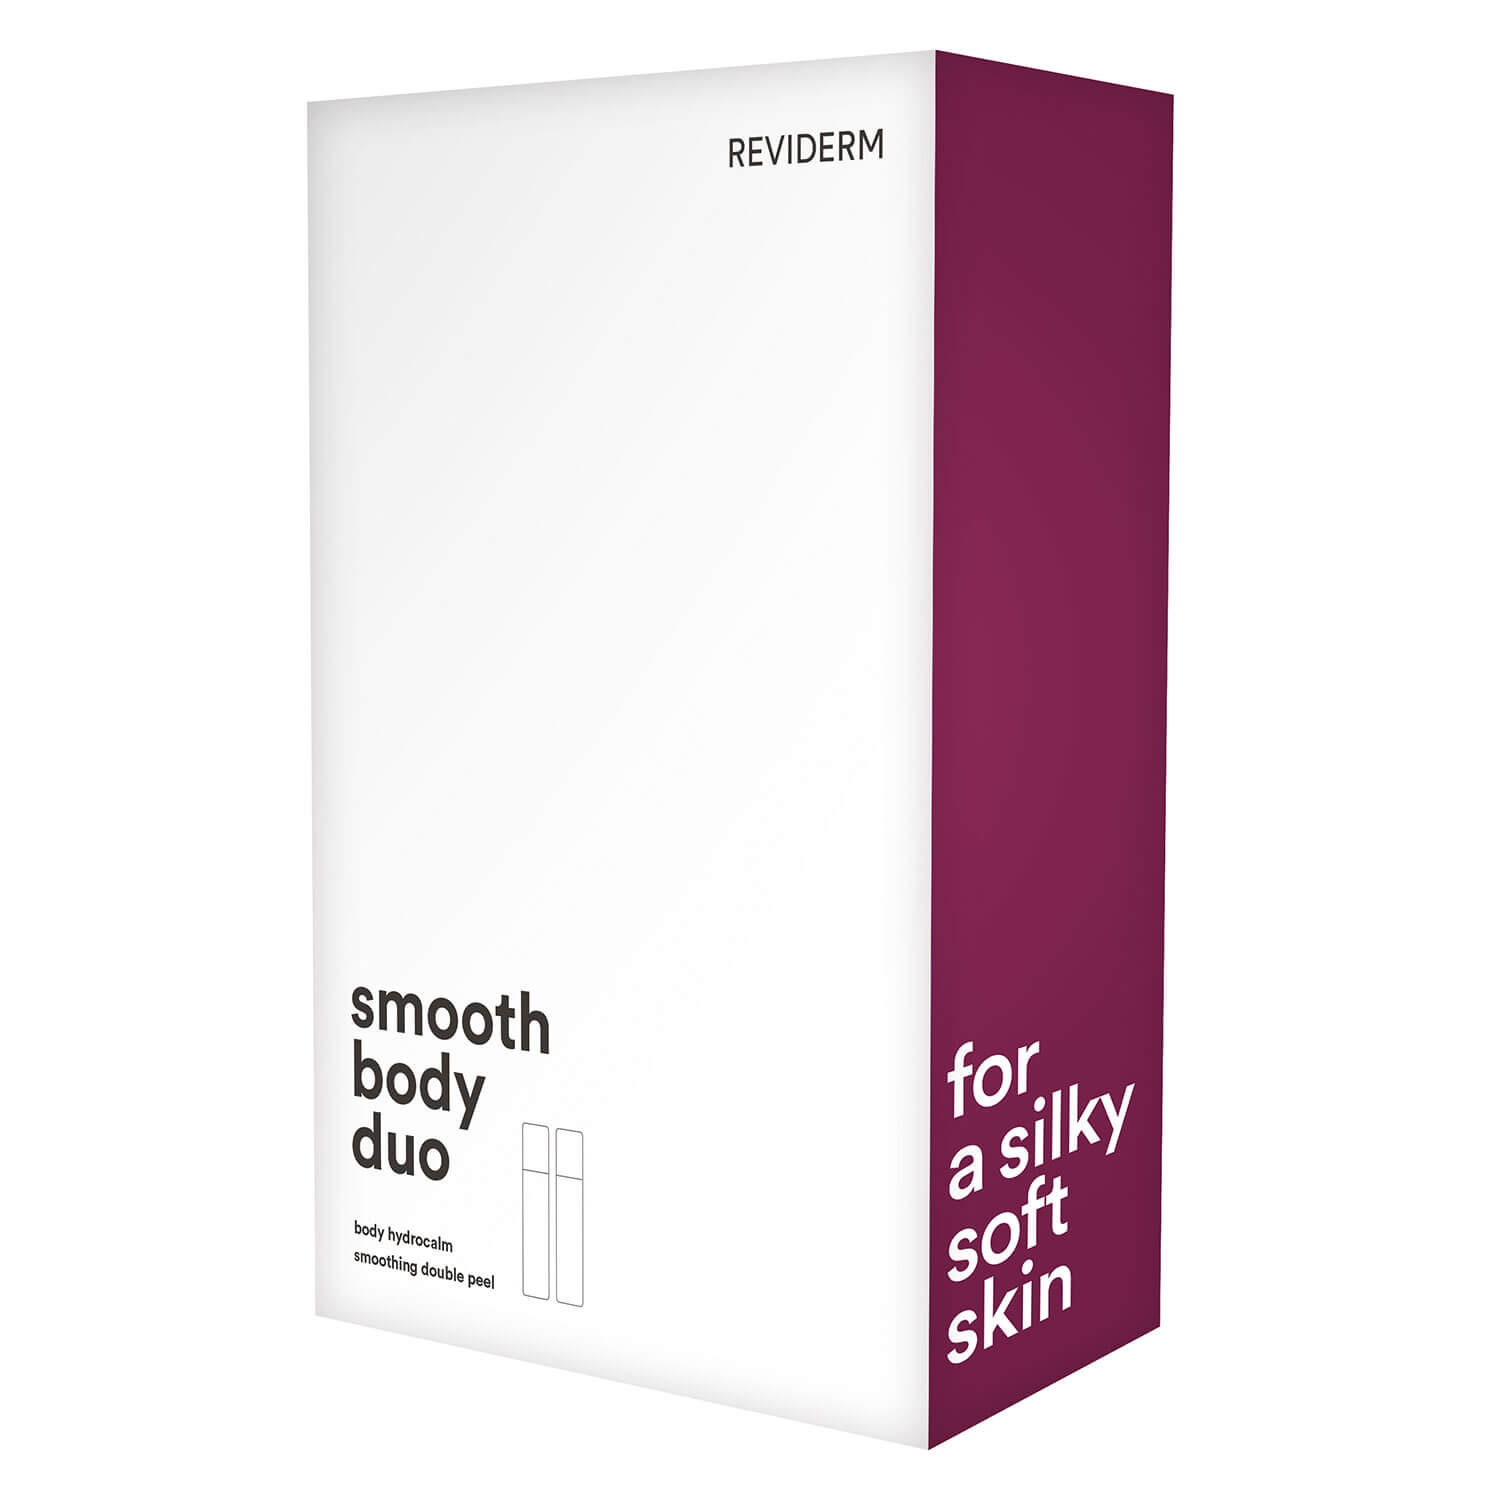 Produktbild von Reviderm Skin Care - smooth body duo Set